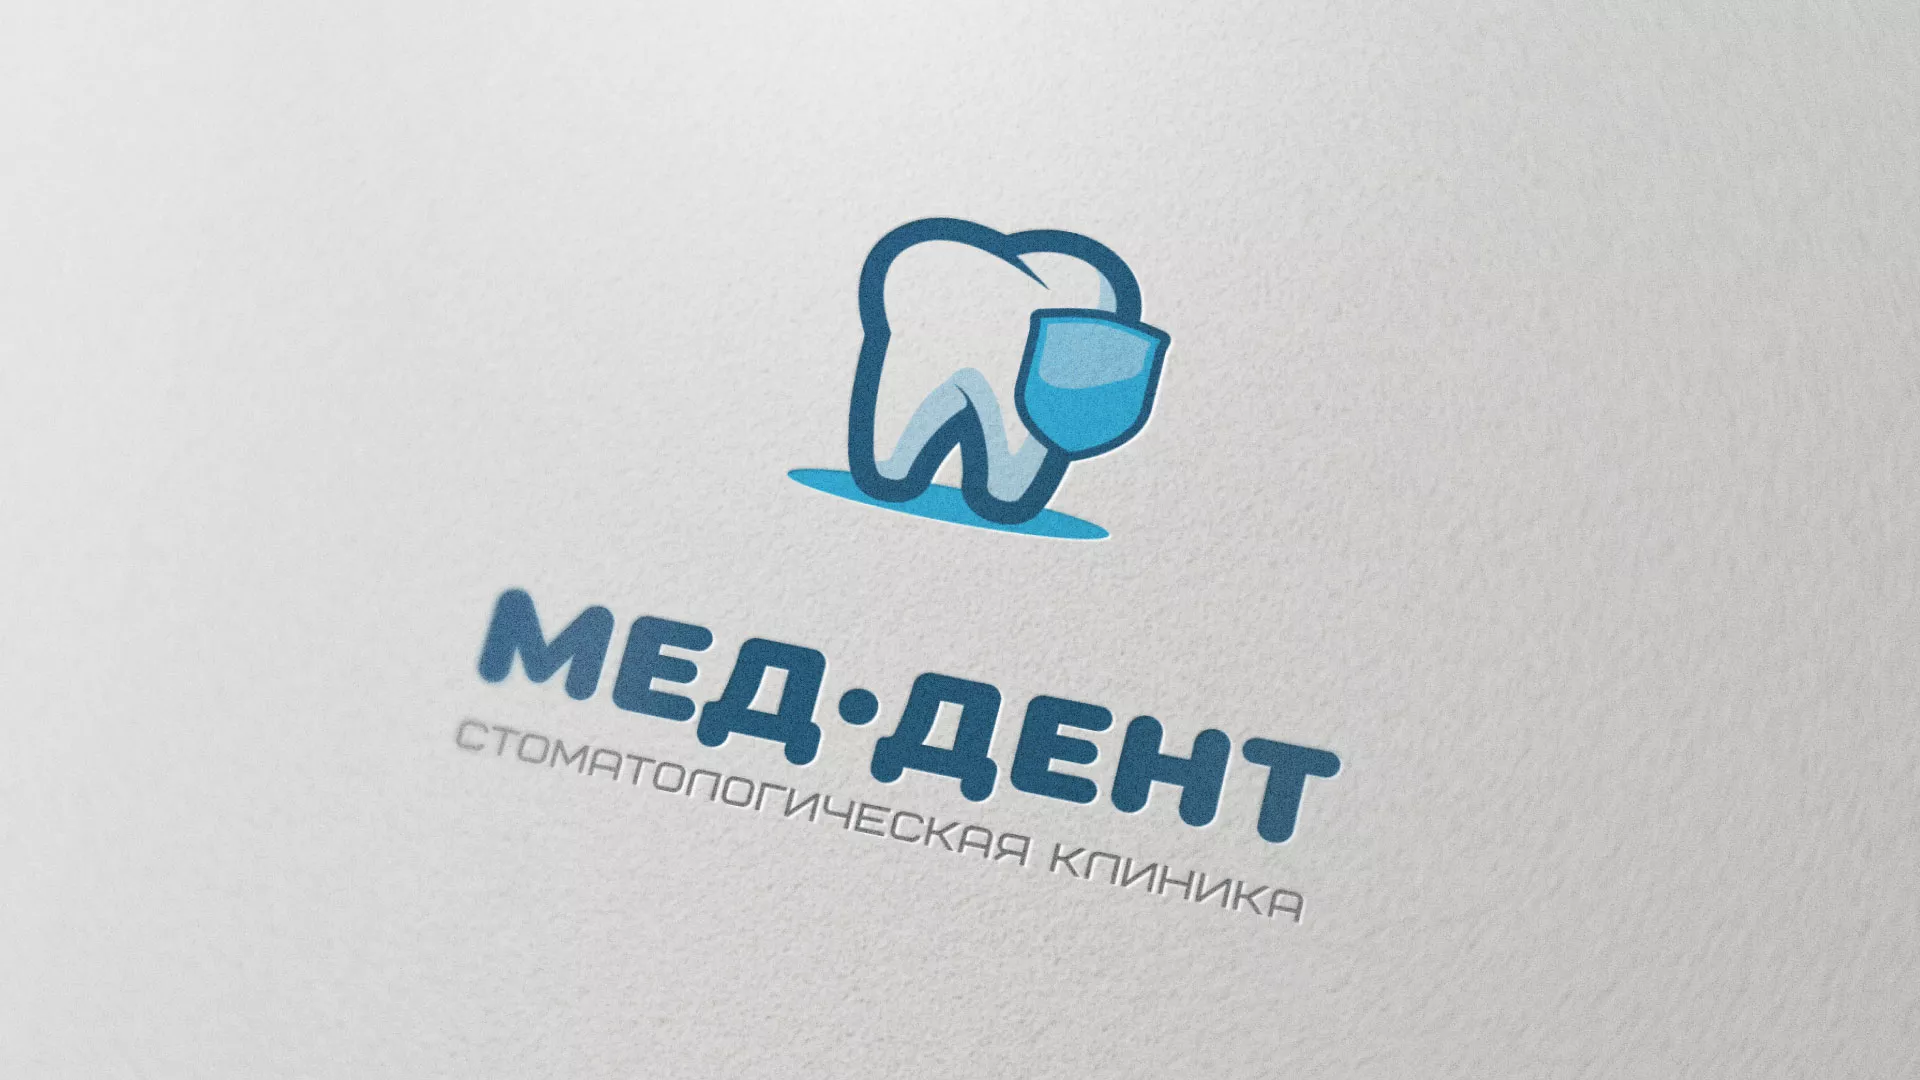 Разработка логотипа стоматологической клиники «МЕД-ДЕНТ» в Кинели